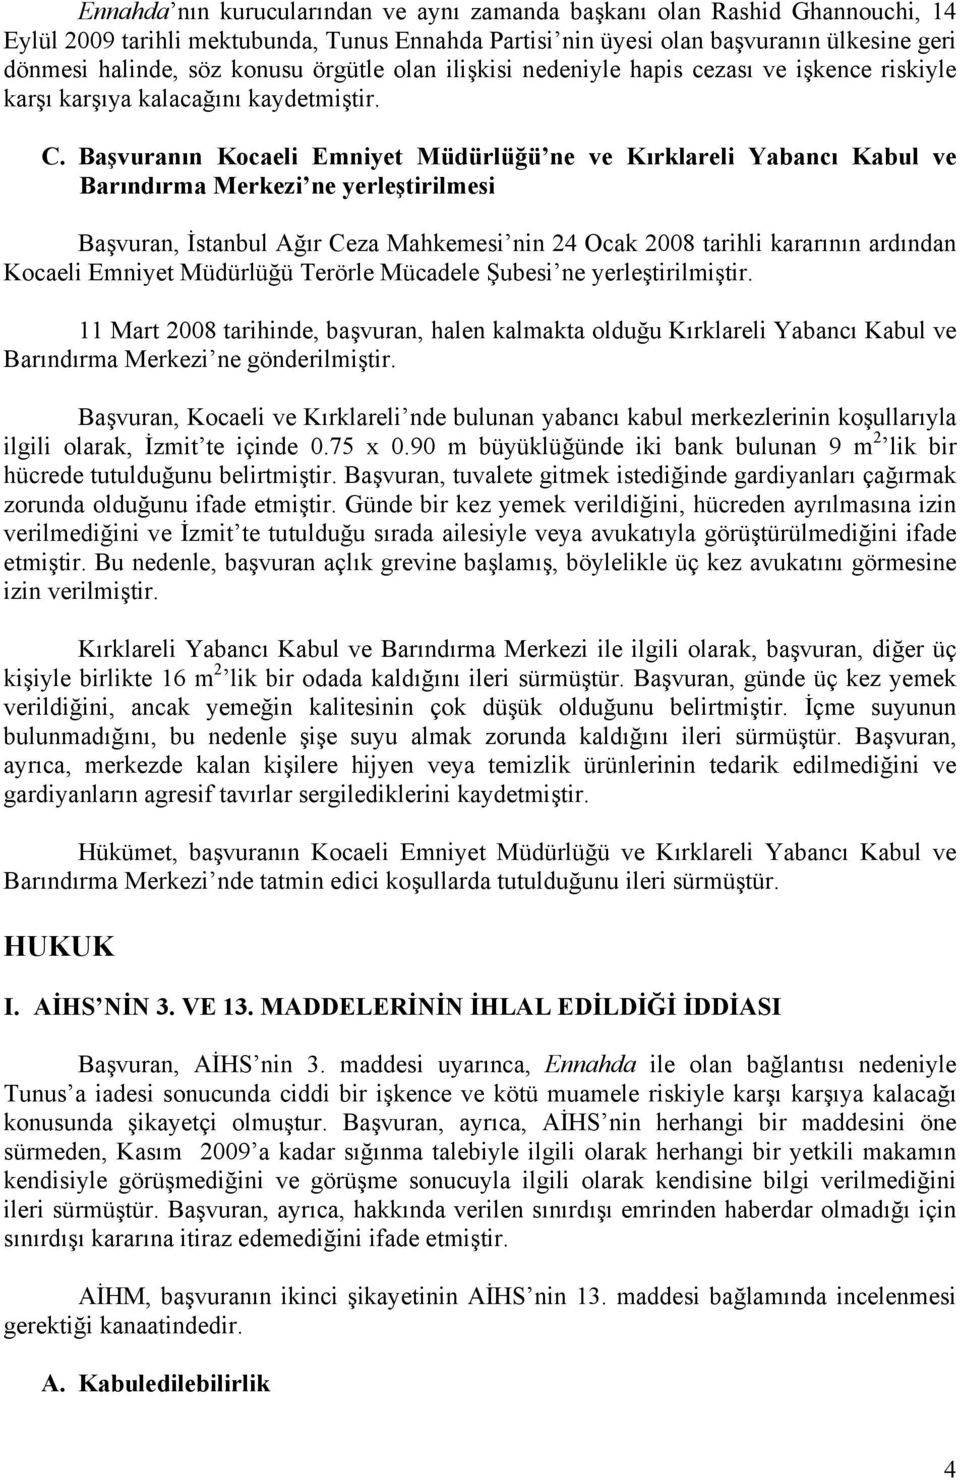 Başvuranın Kocaeli Emniyet Müdürlüğü ne ve Kırklareli Yabancı Kabul ve Barındırma Merkezi ne yerleştirilmesi Başvuran, İstanbul Ağır Ceza Mahkemesi nin 24 Ocak 2008 tarihli kararının ardından Kocaeli